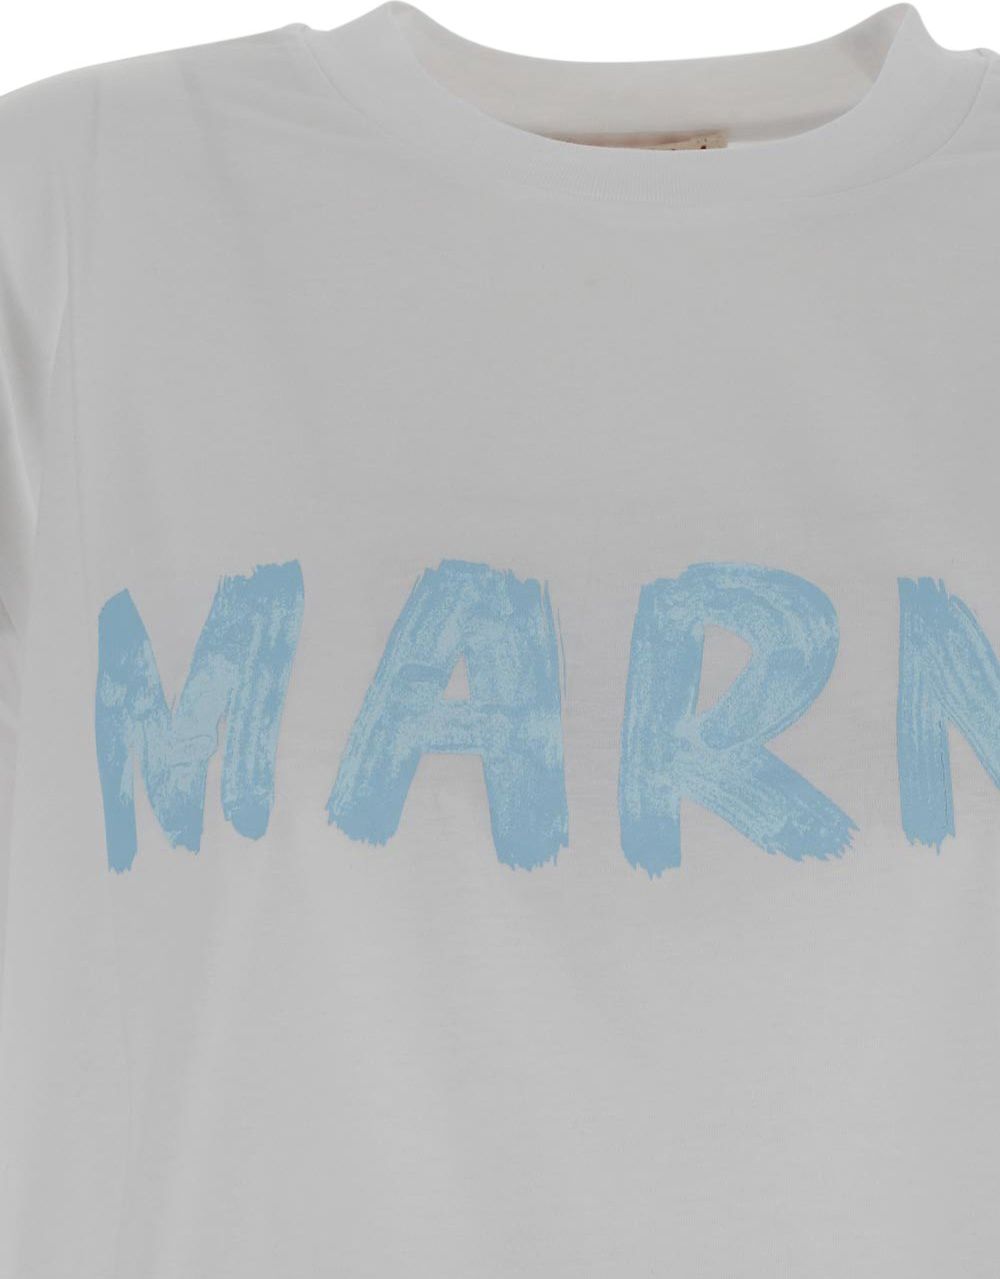 Marni T-shirt Logo - Lily White Wit